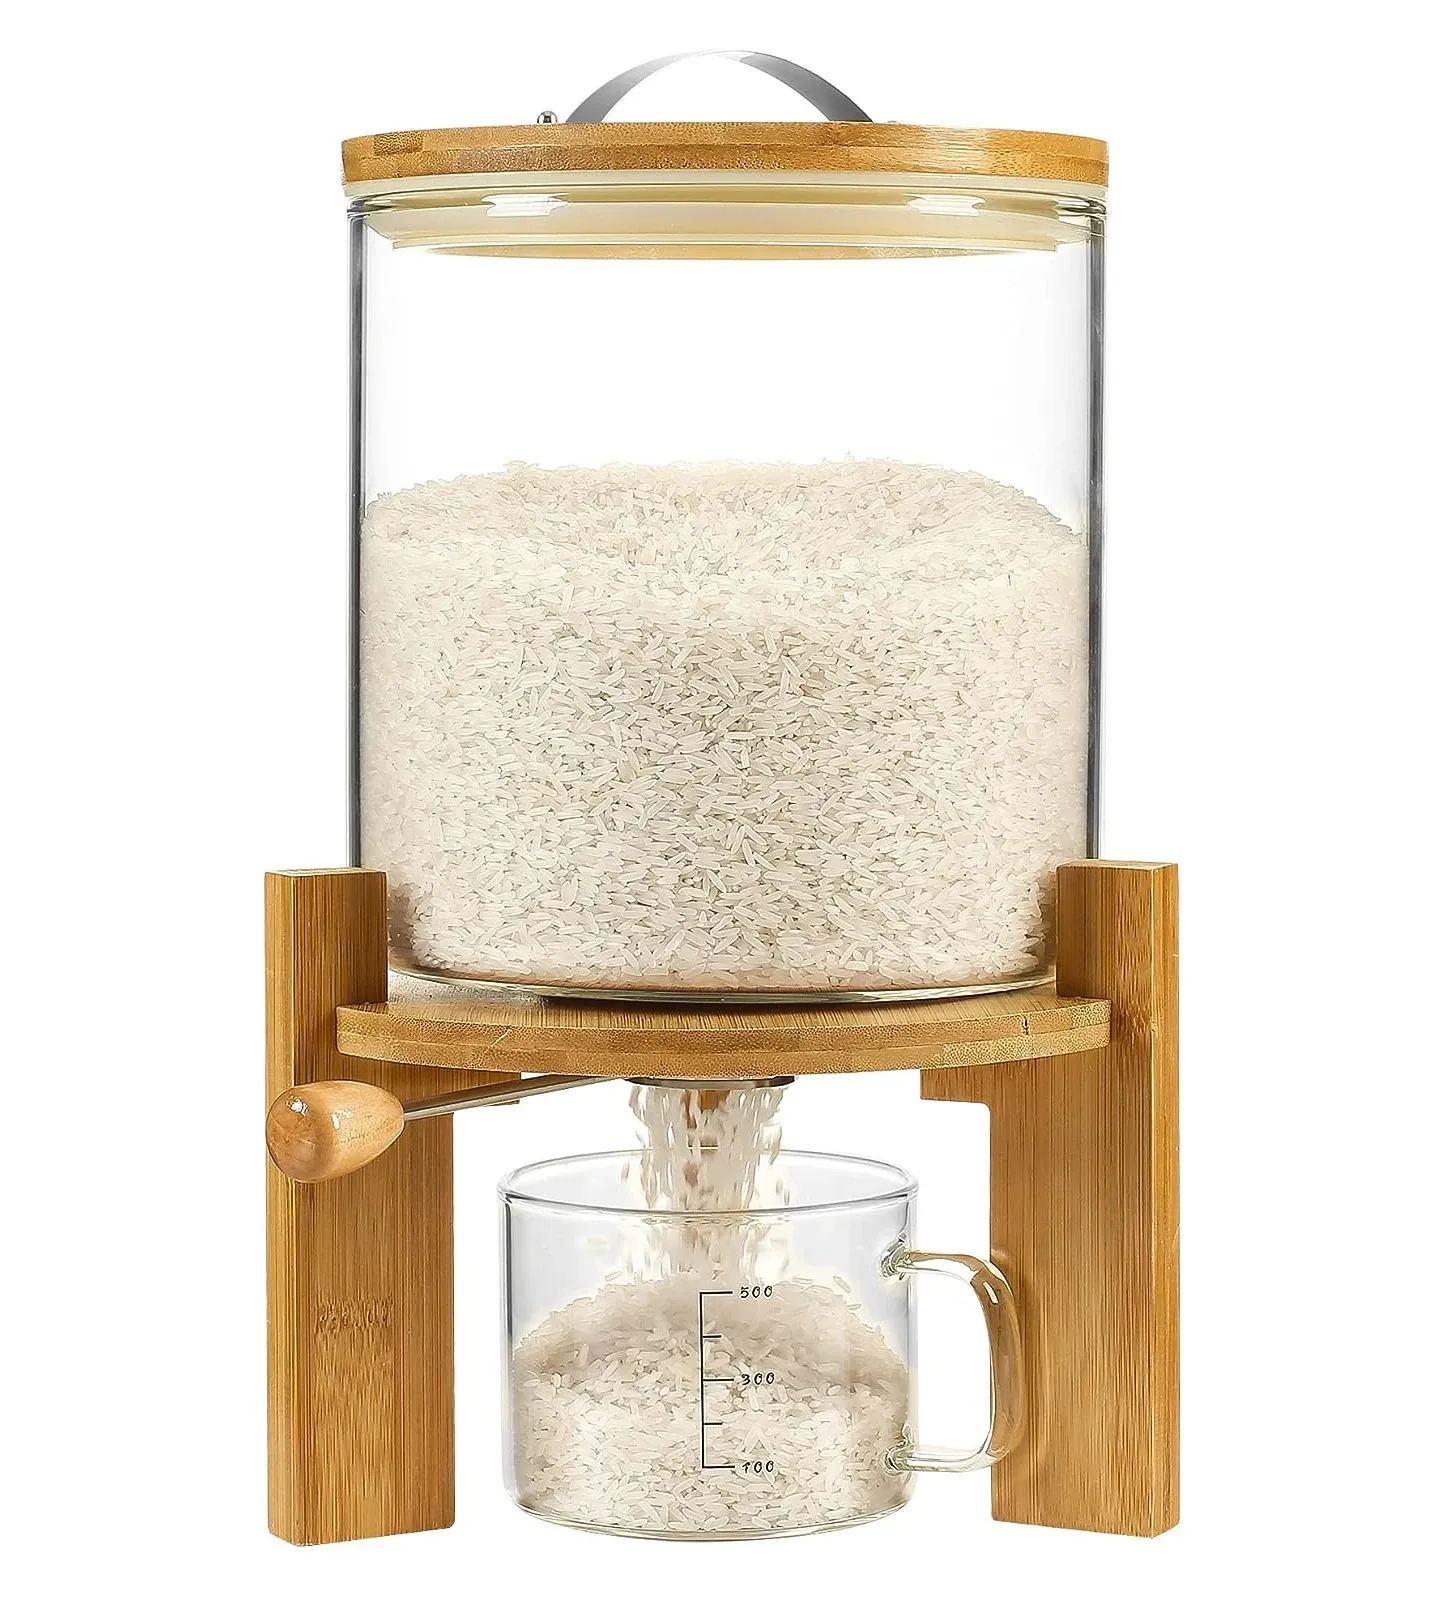 Dispensador de cereais e farinha de arroz de bambu, copo medidor de vidro, despensa, armazenamento de alimentos, caixa com tampa de bambu